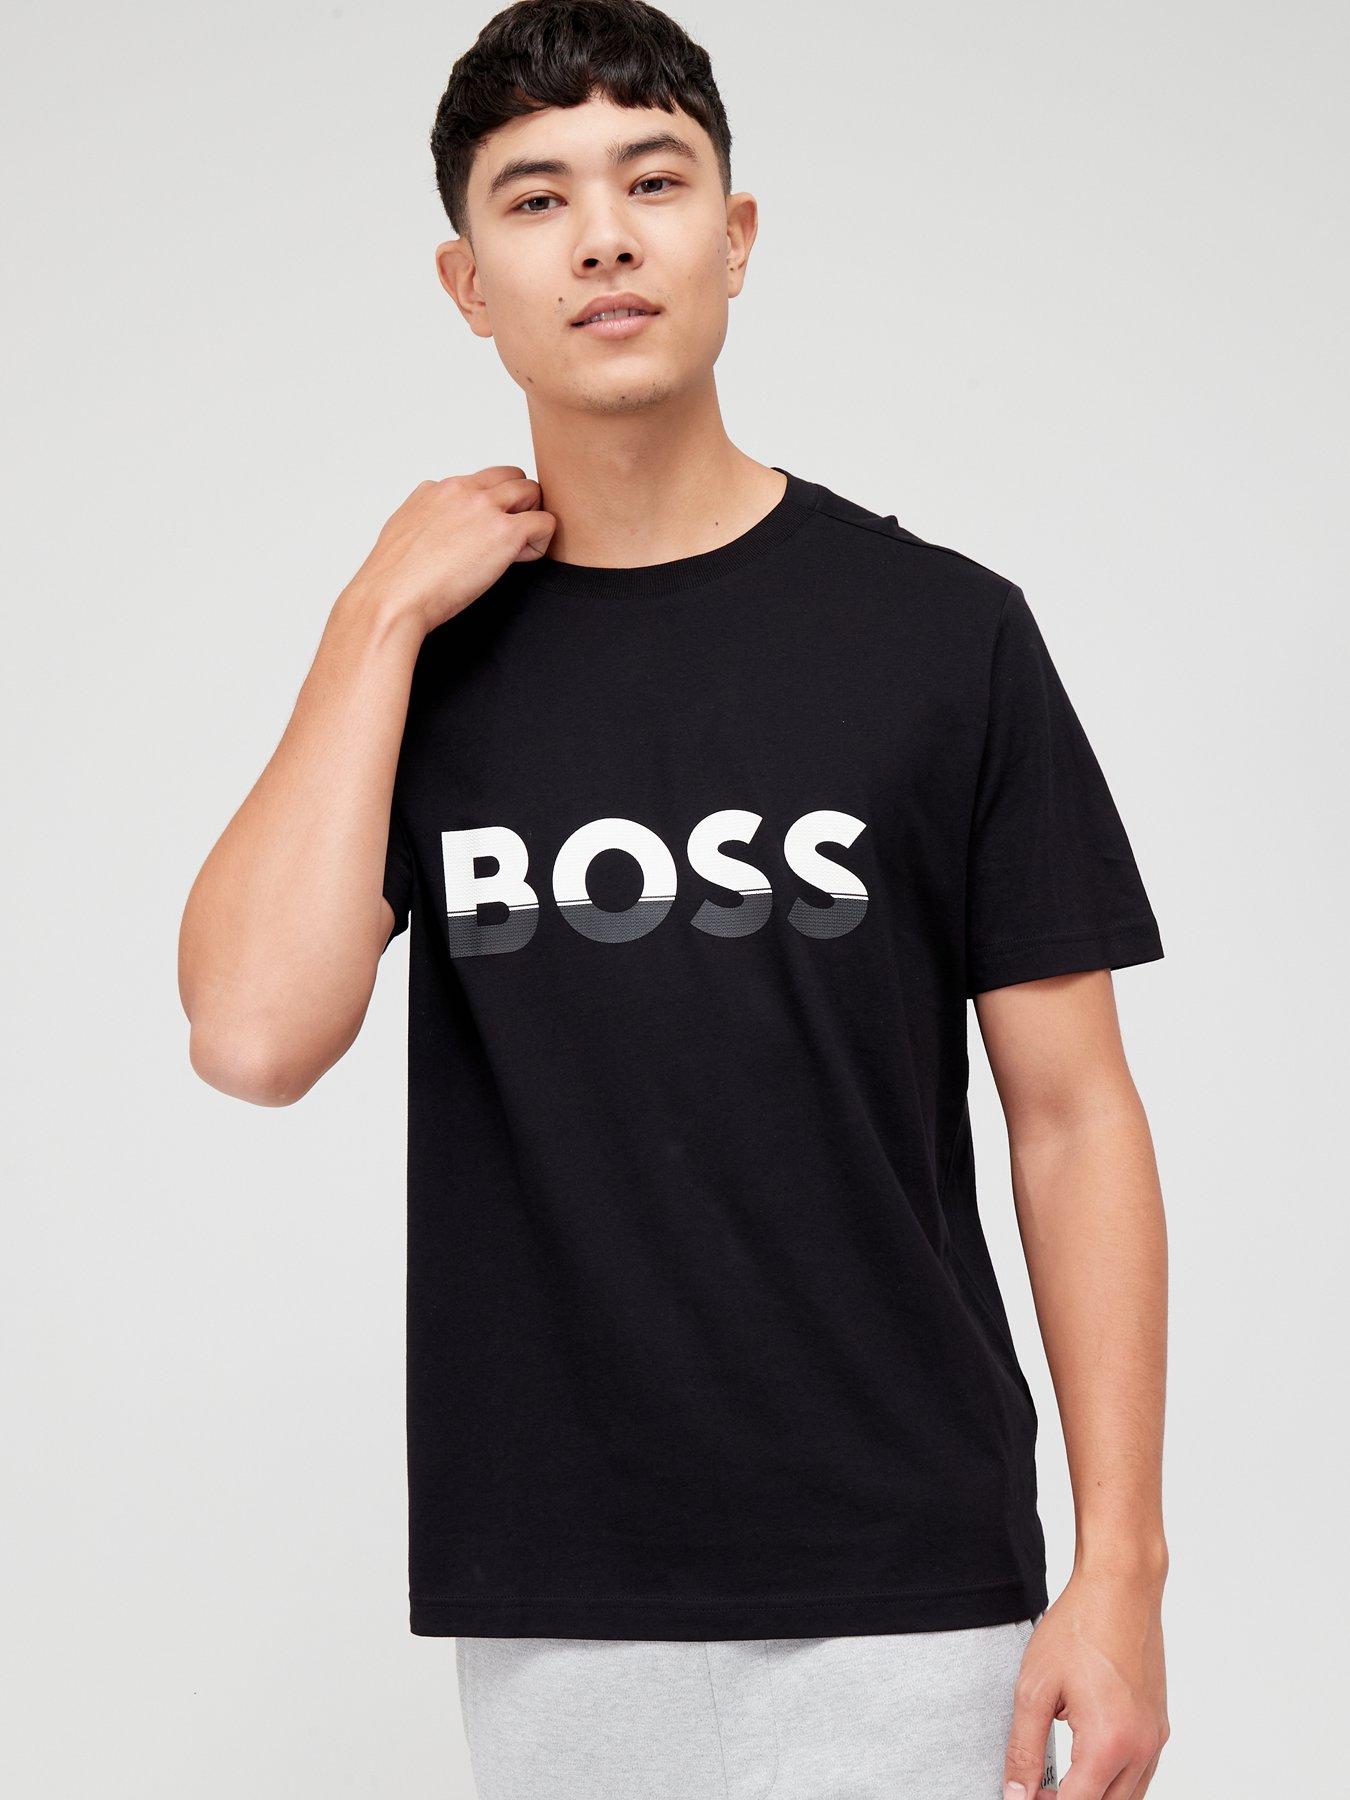 Polo HUGO BOSS 2 M Men Clothing Hugo Boss Men T-shirts & Polos Hugo Boss Men Polos Hugo Boss Men Polos Hugo Boss Men black 